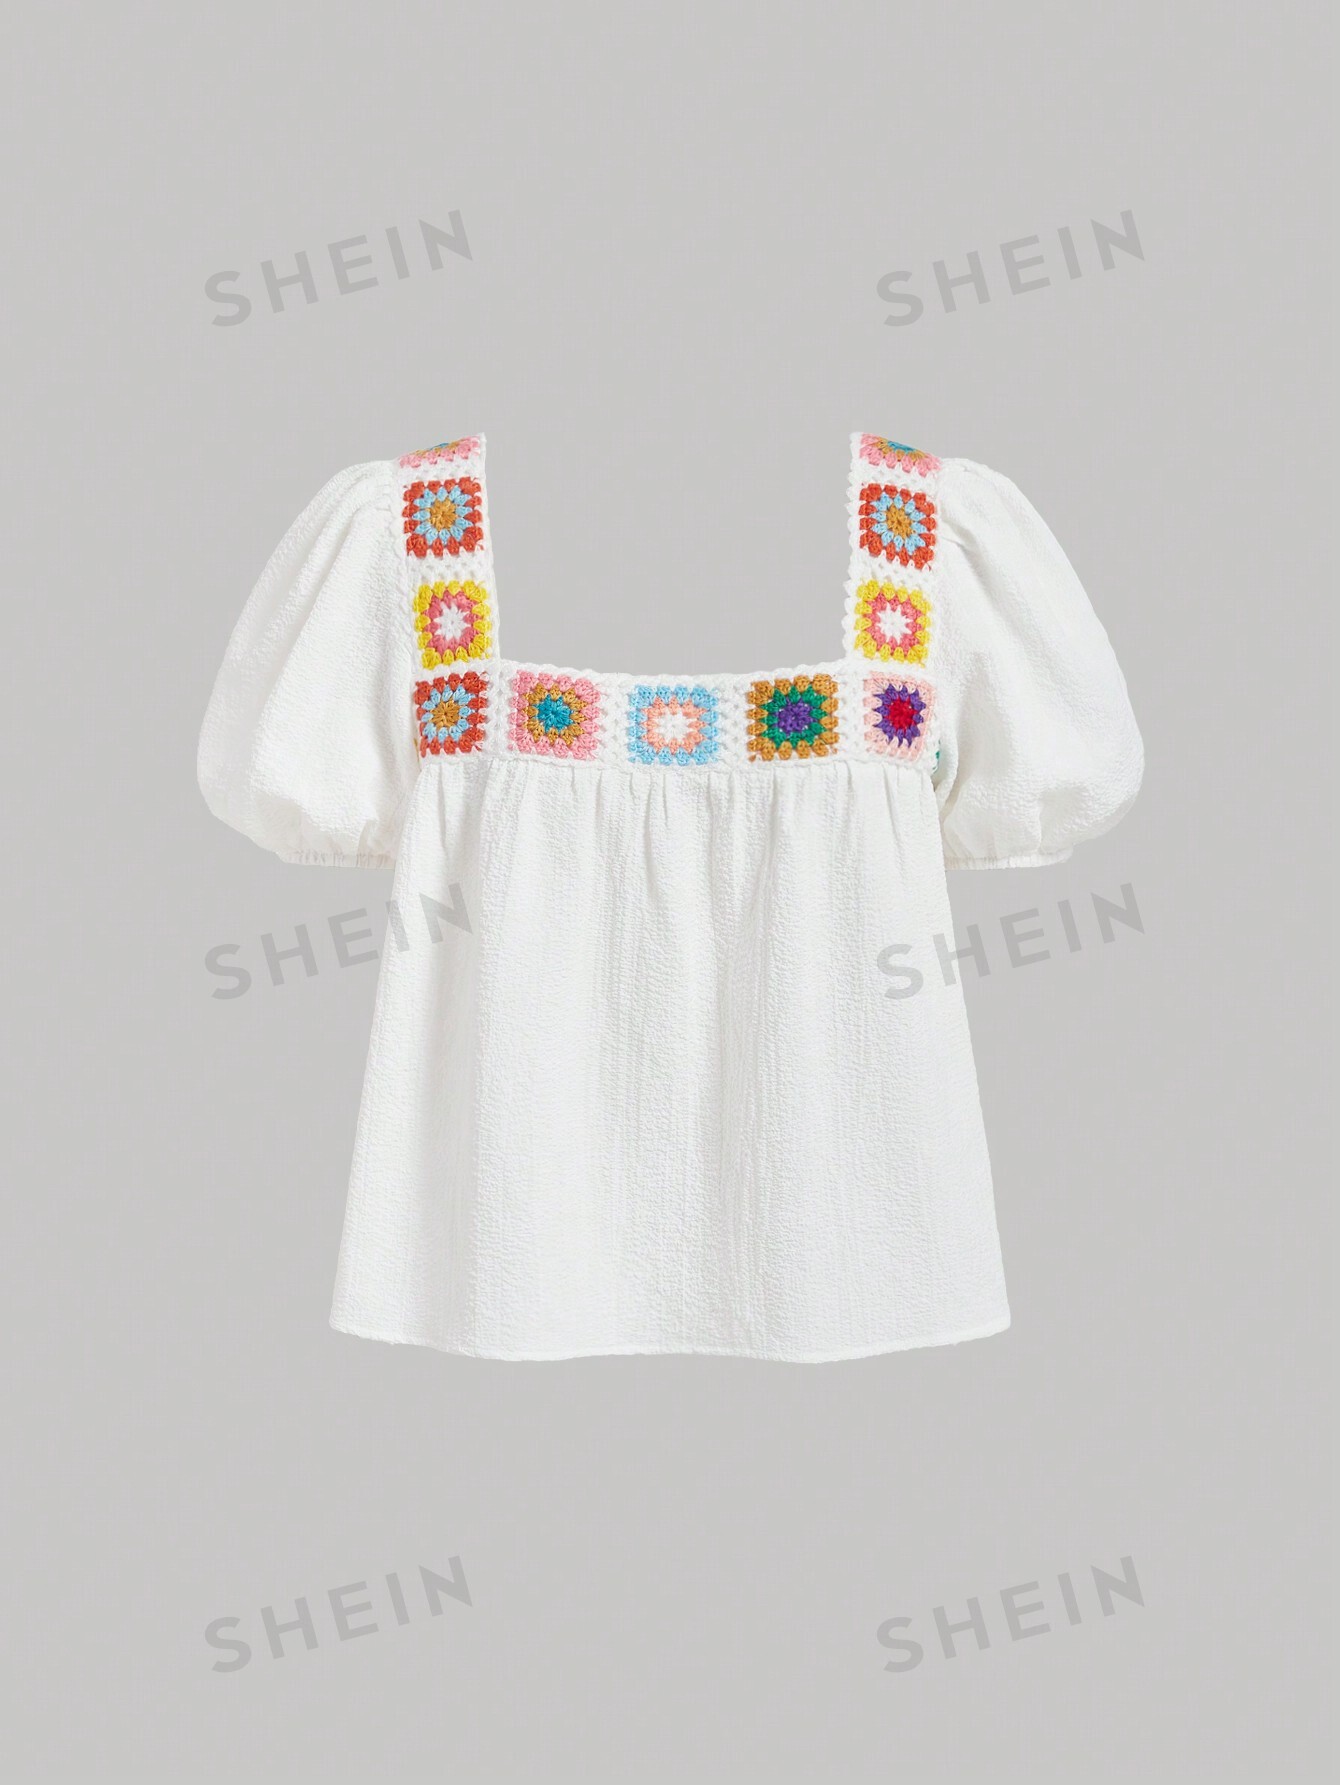 SHEIN MOD Женская лоскутная рубашка с пышными рукавами, связанная крючком, белый женская блузка с пышными рукавами koamissa с квадратным воротником офисная рубашка в корейском стиле ретро весна осень